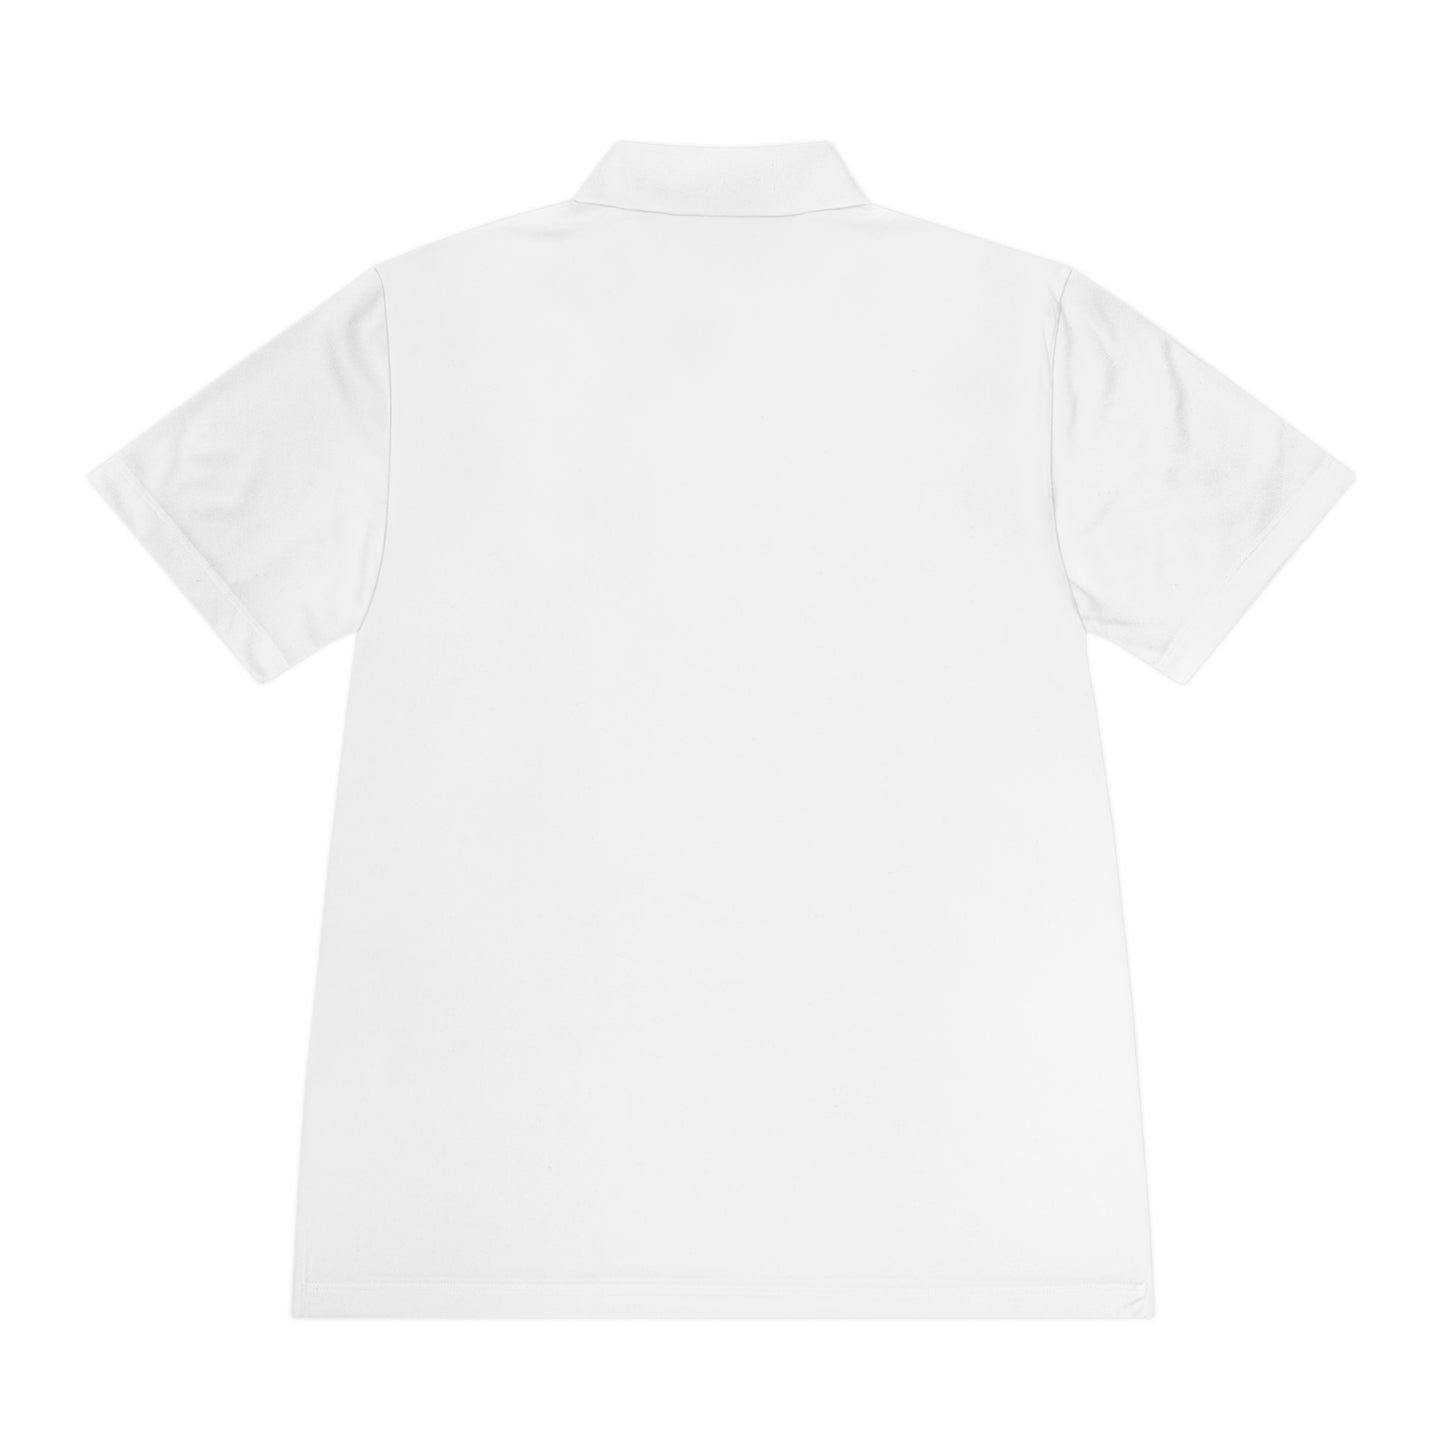 FMF - Federação Mineira de Futebol Men's Sport Polo Shirt